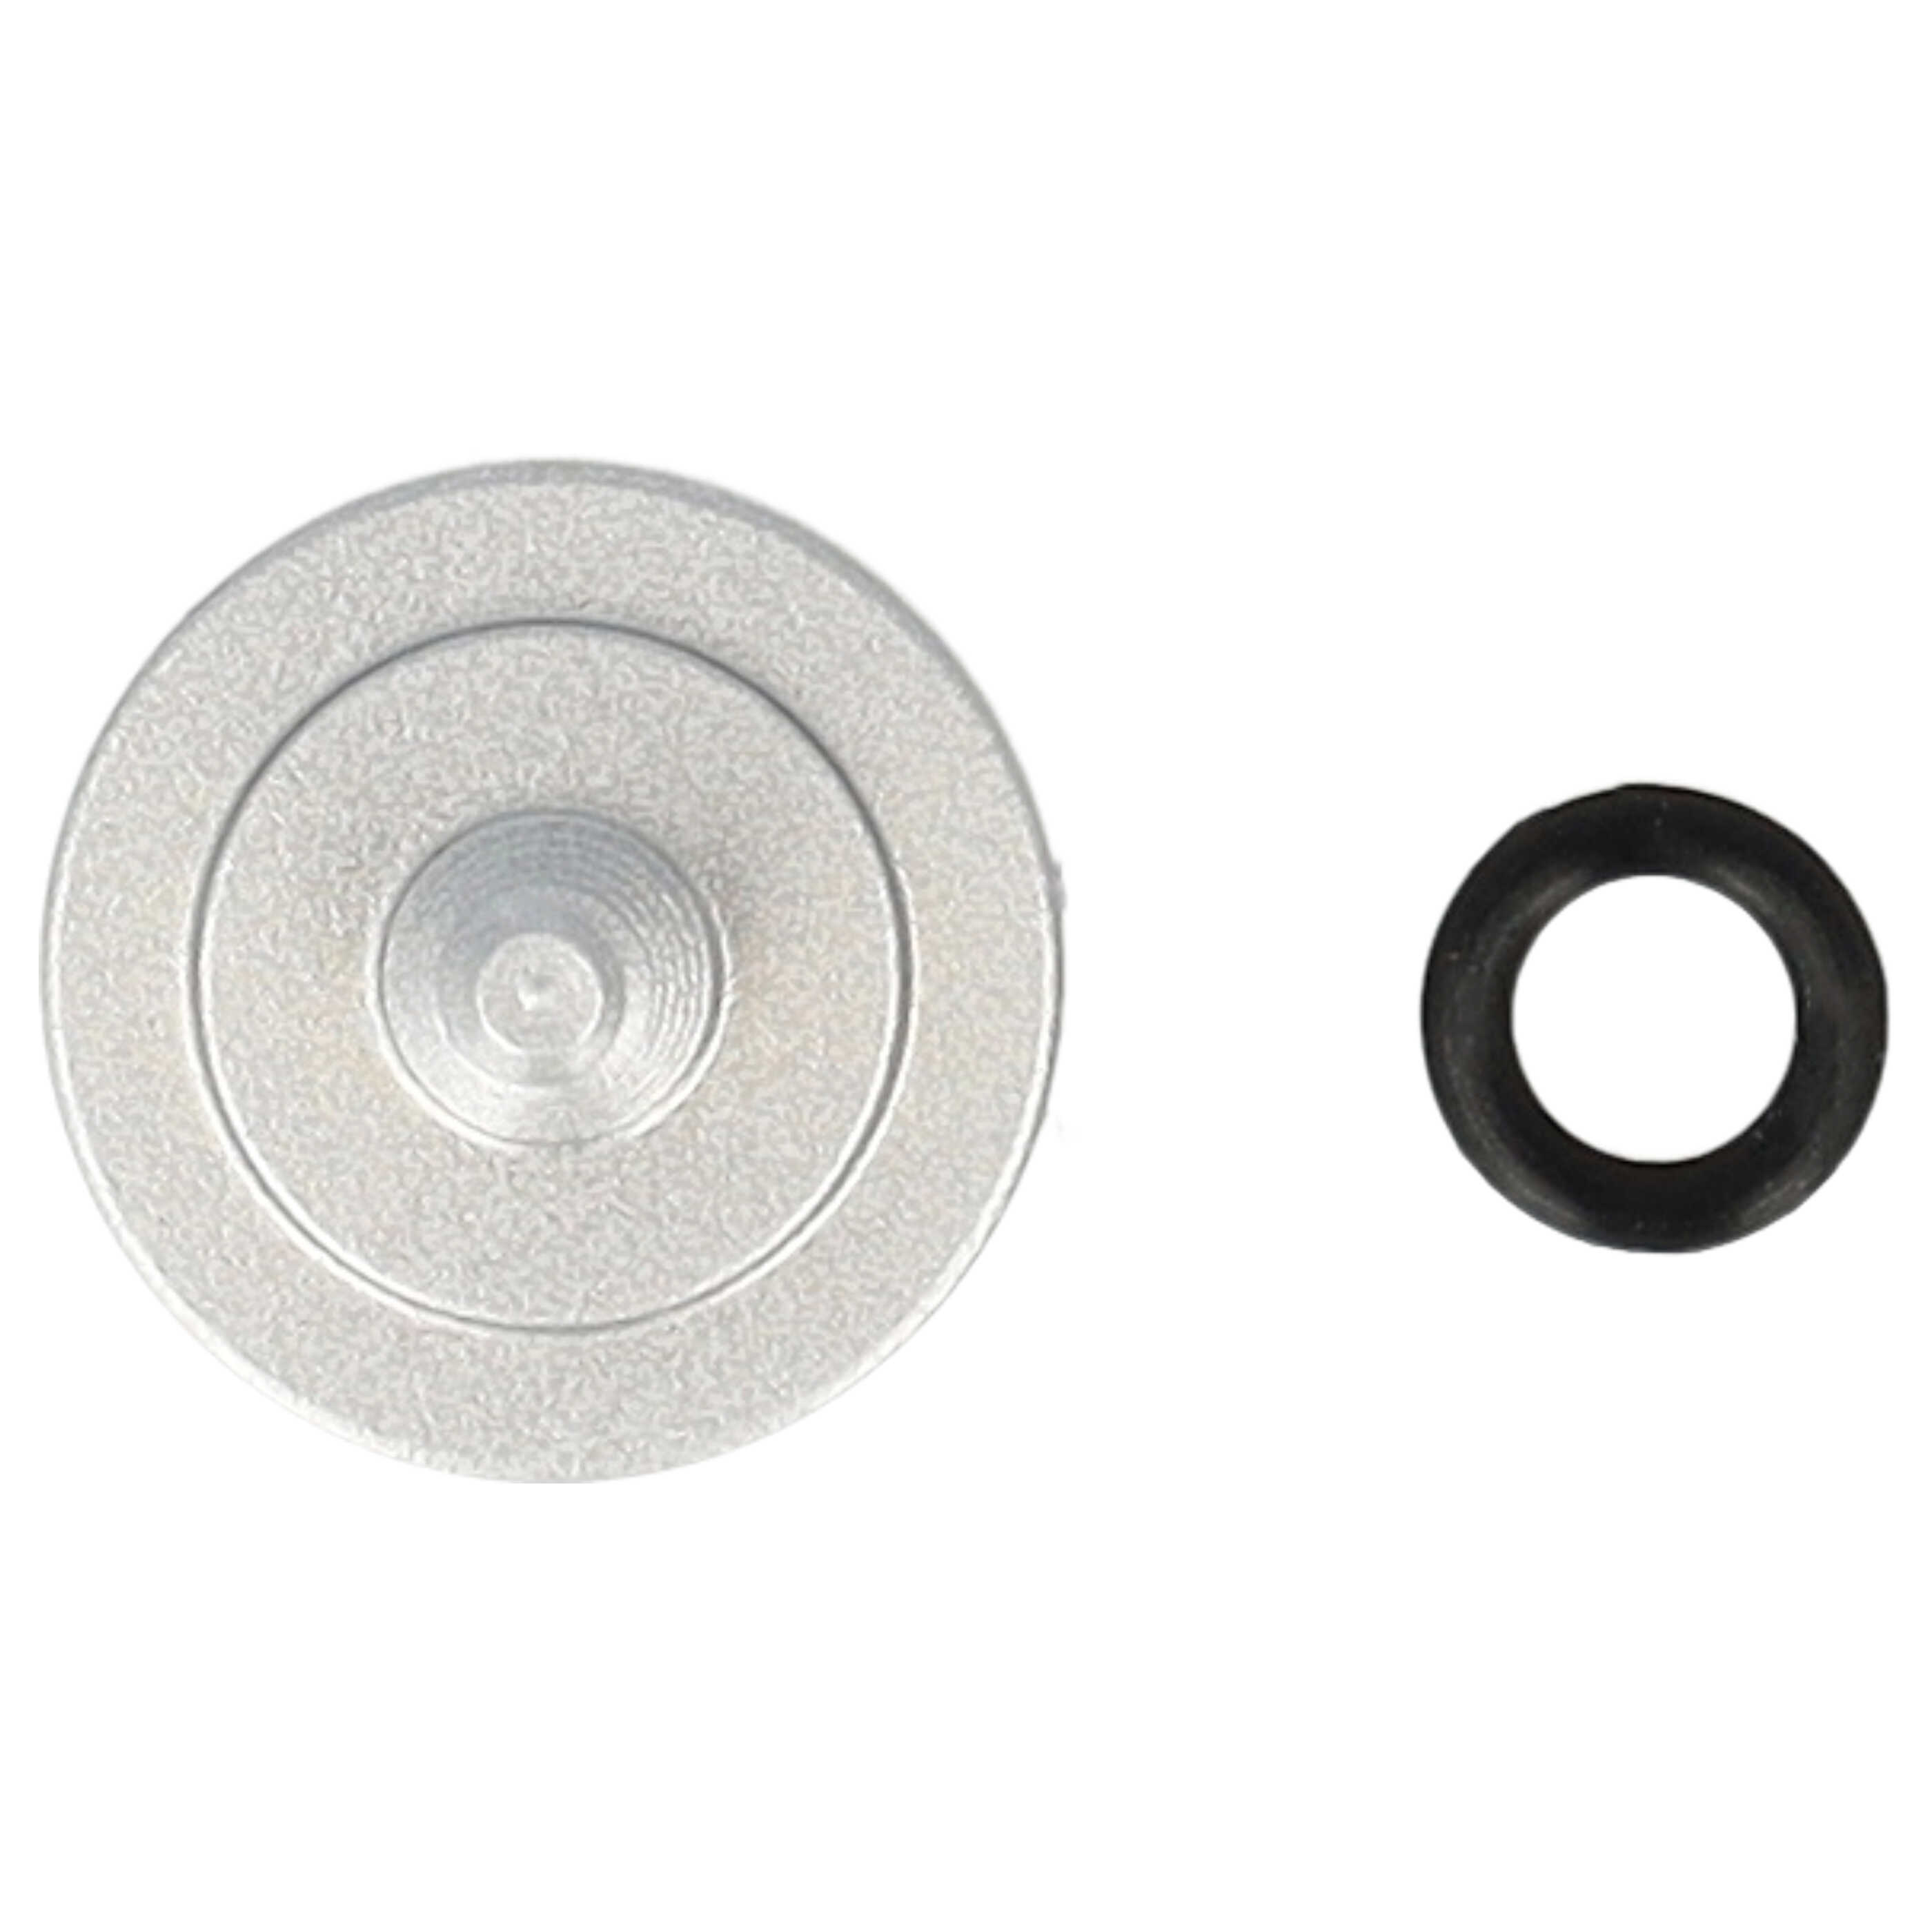 Release Button suitable for X-E1 FujifilmCamera etc. - Metal, Silver